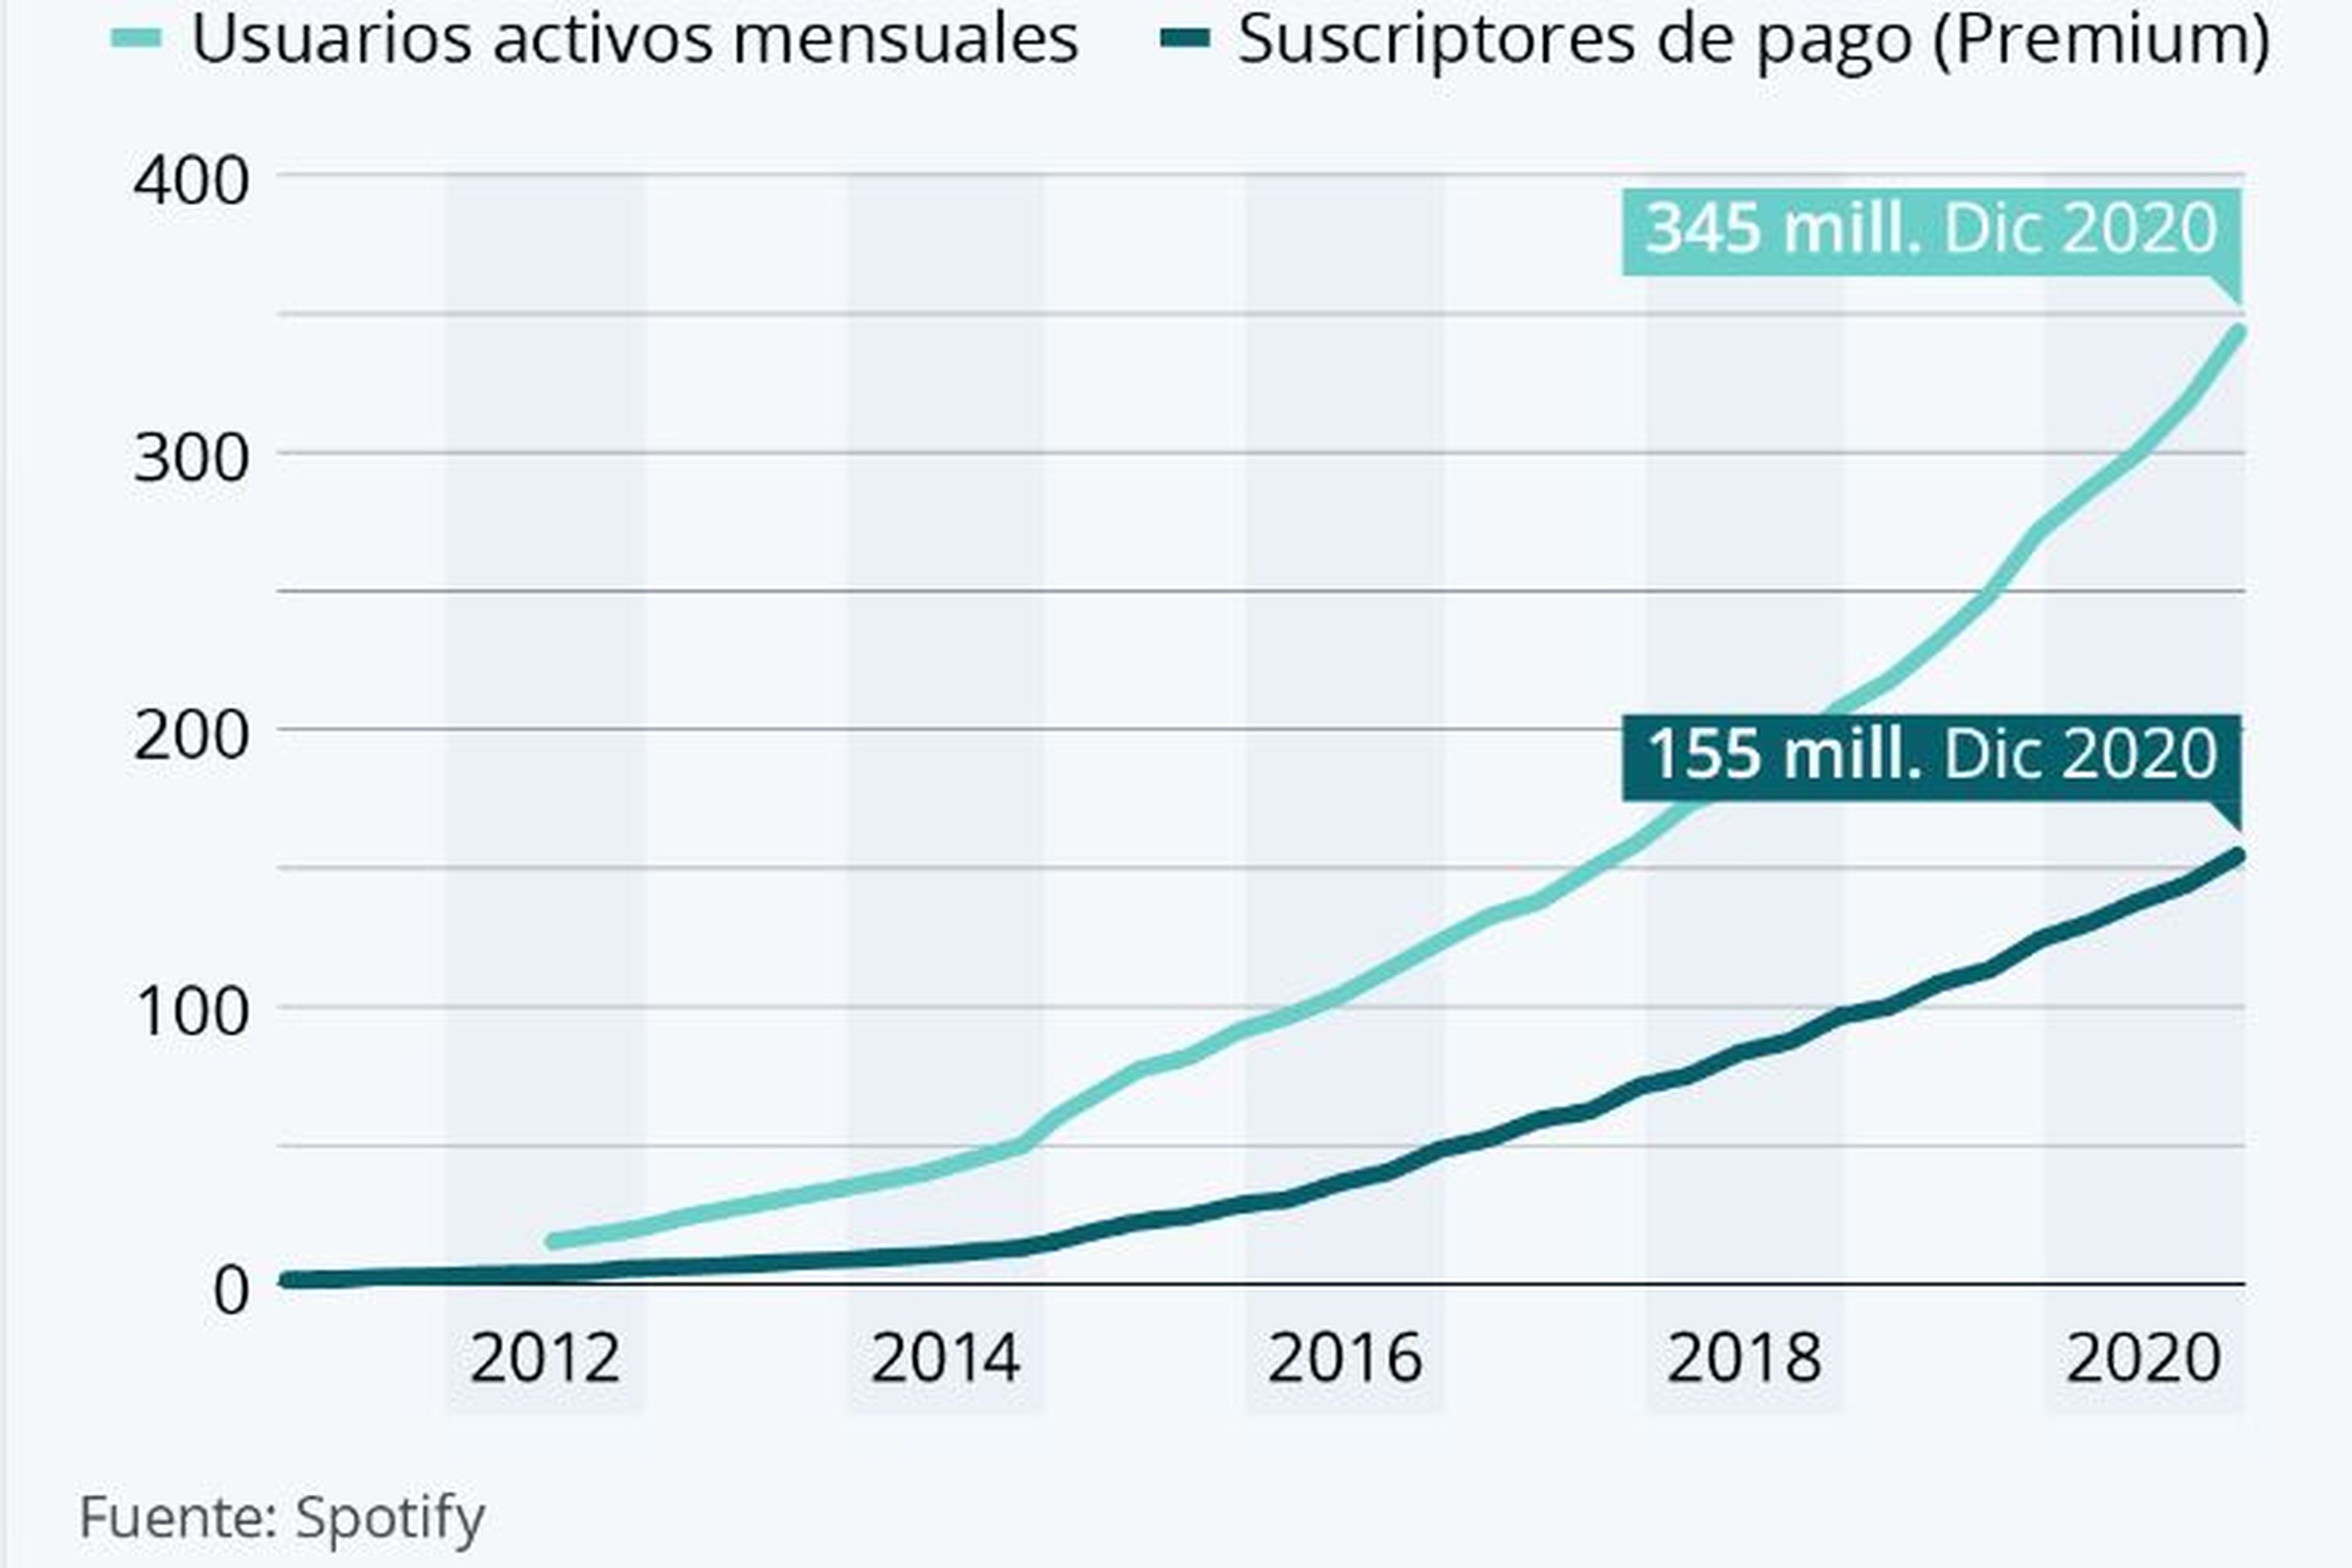 Usuarios activos mensuales y suscriptores de pago en Spotify, entre 2012 y 2020.